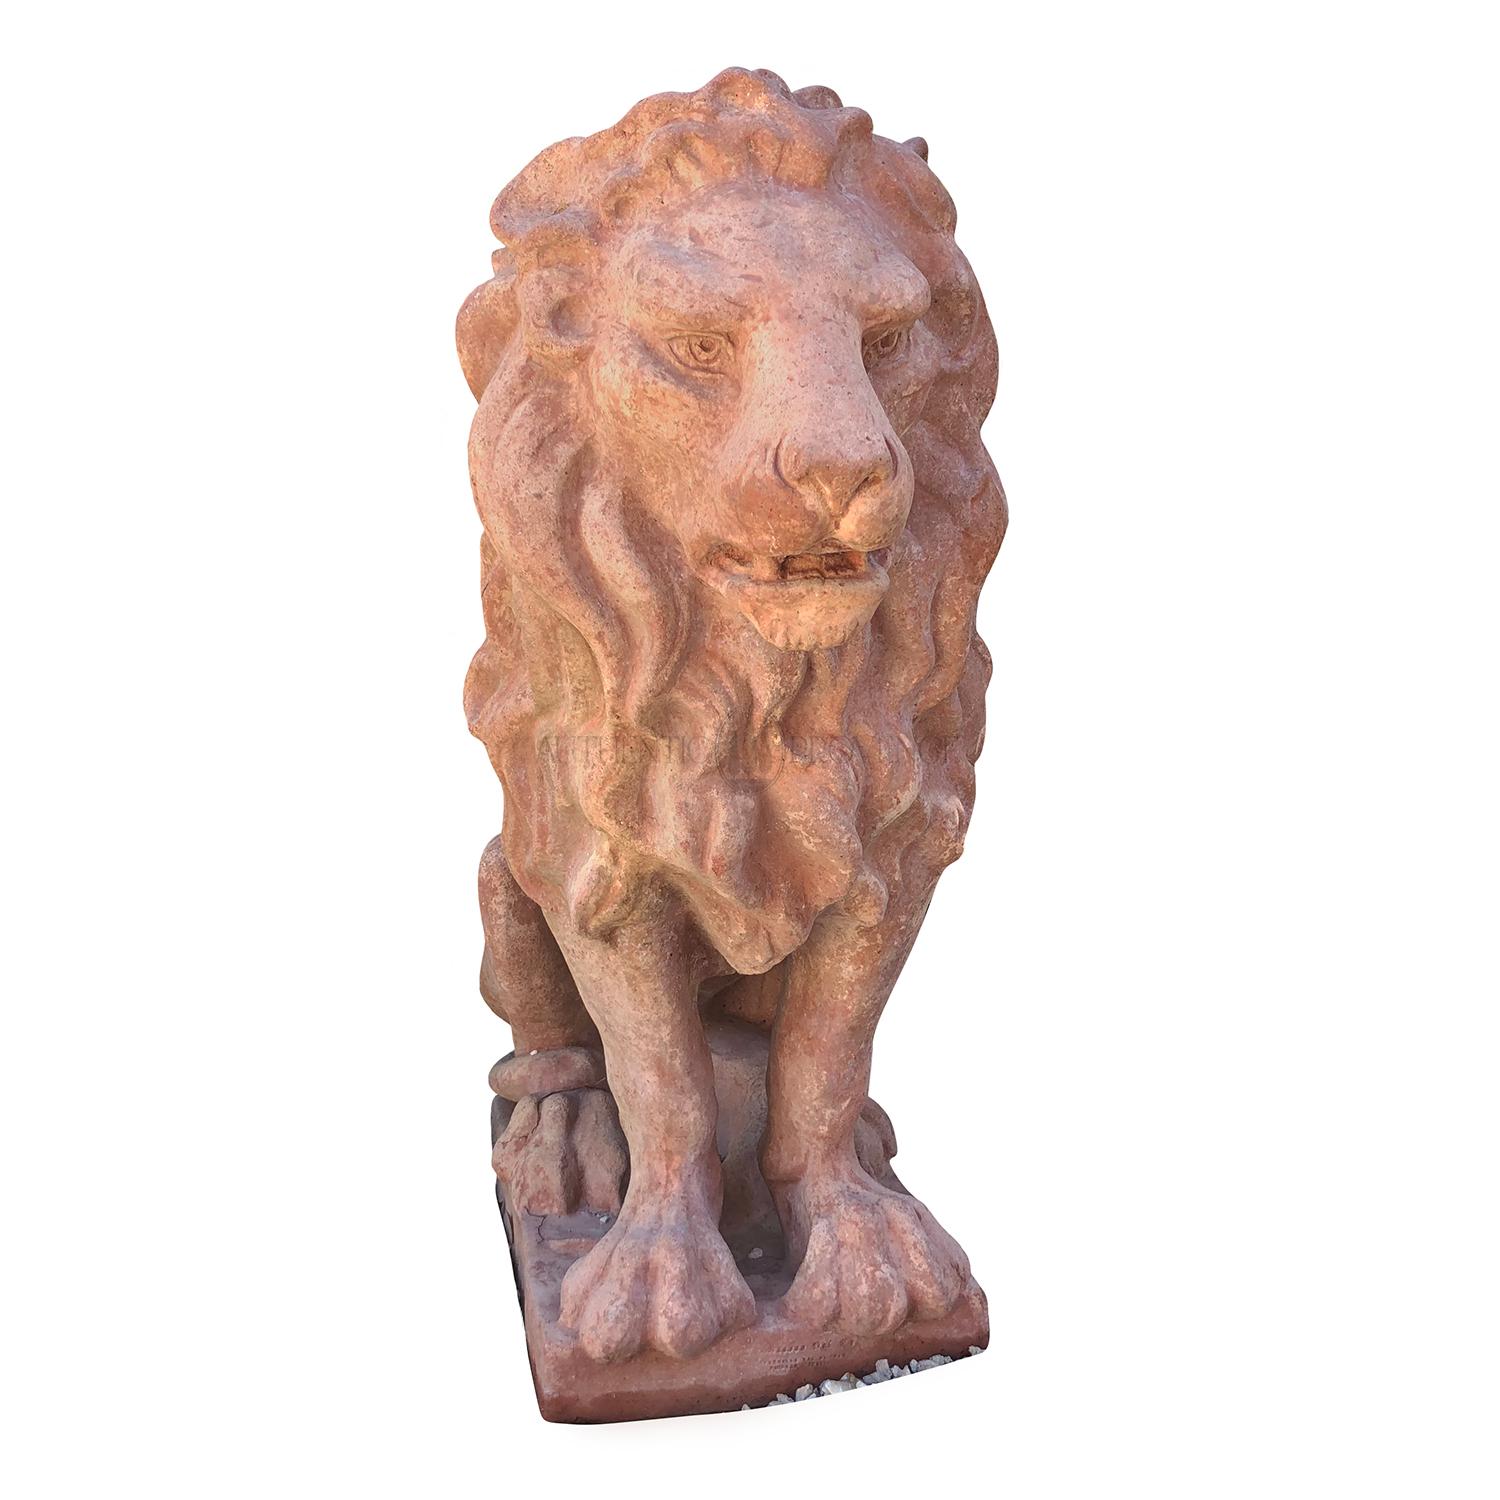 Statuette italienne classique en terre cuite toscane représentant un lion royal en position de gardien, en bon état. Usure conforme à l'âge et à l'usage, vers 1910-1920, Prov. Toscane, Italie.